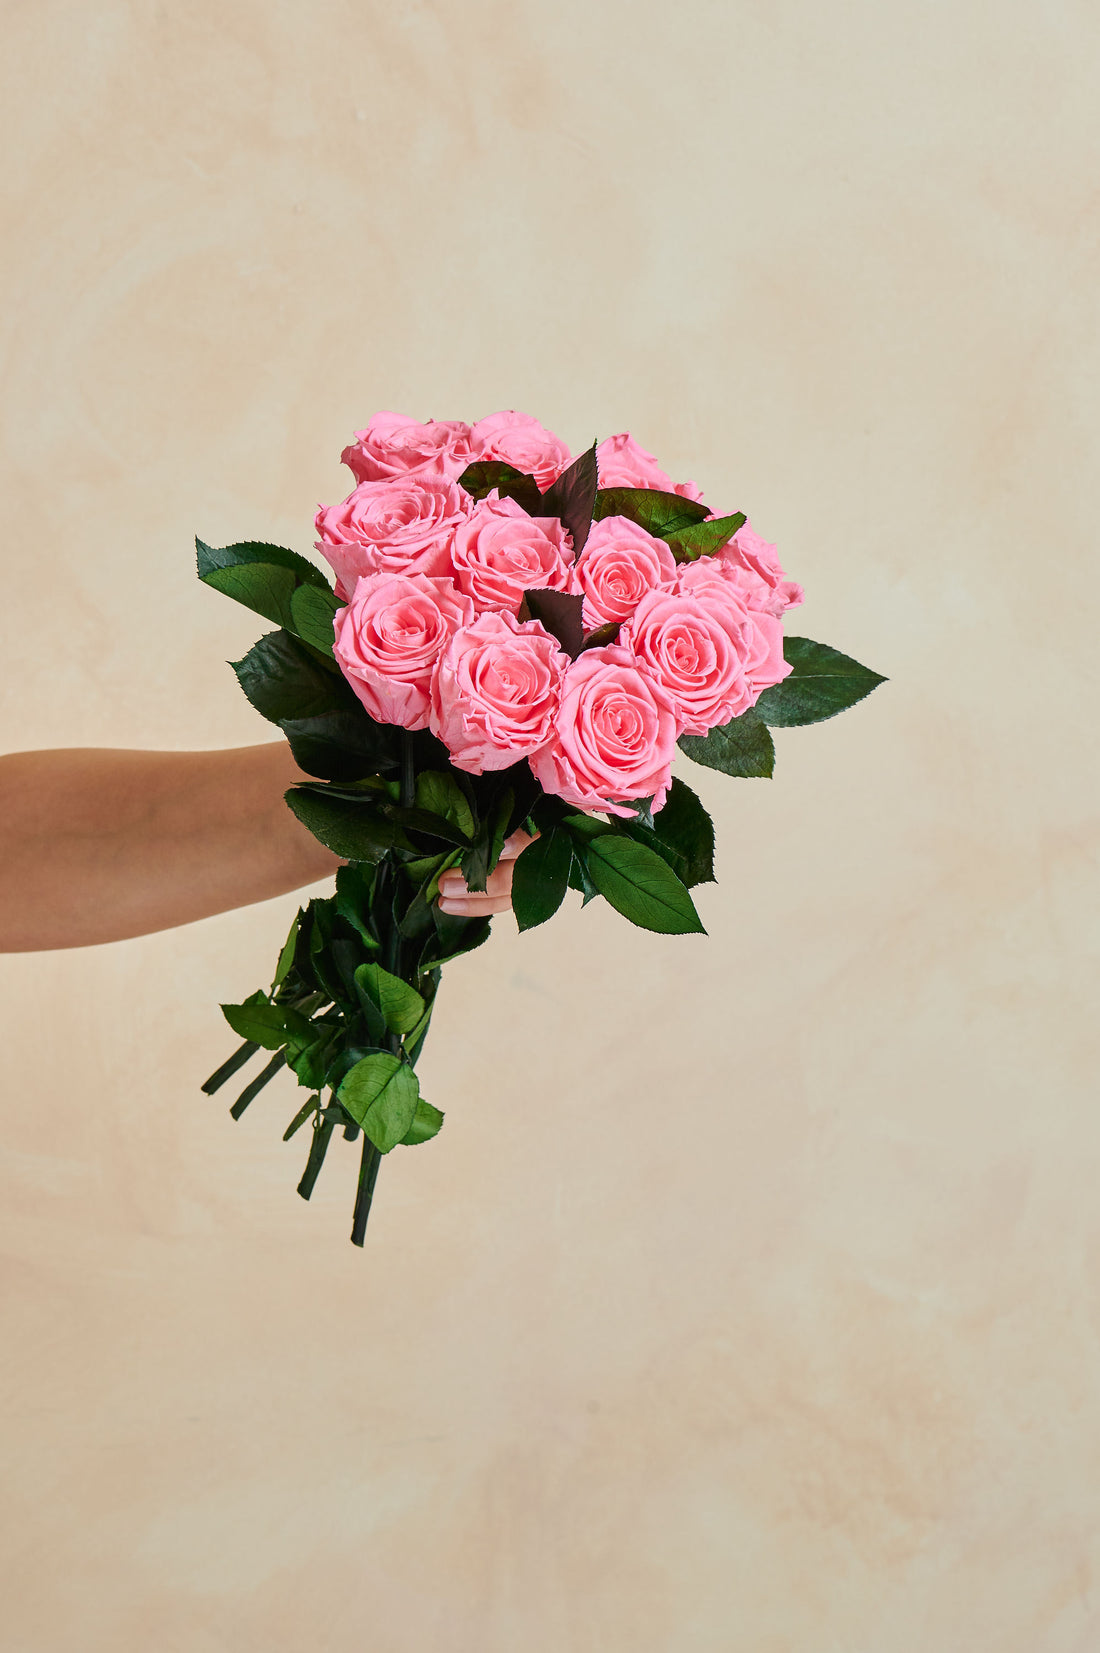 Dozen Long Stems Roses by La Fleur Lifetime Flowers